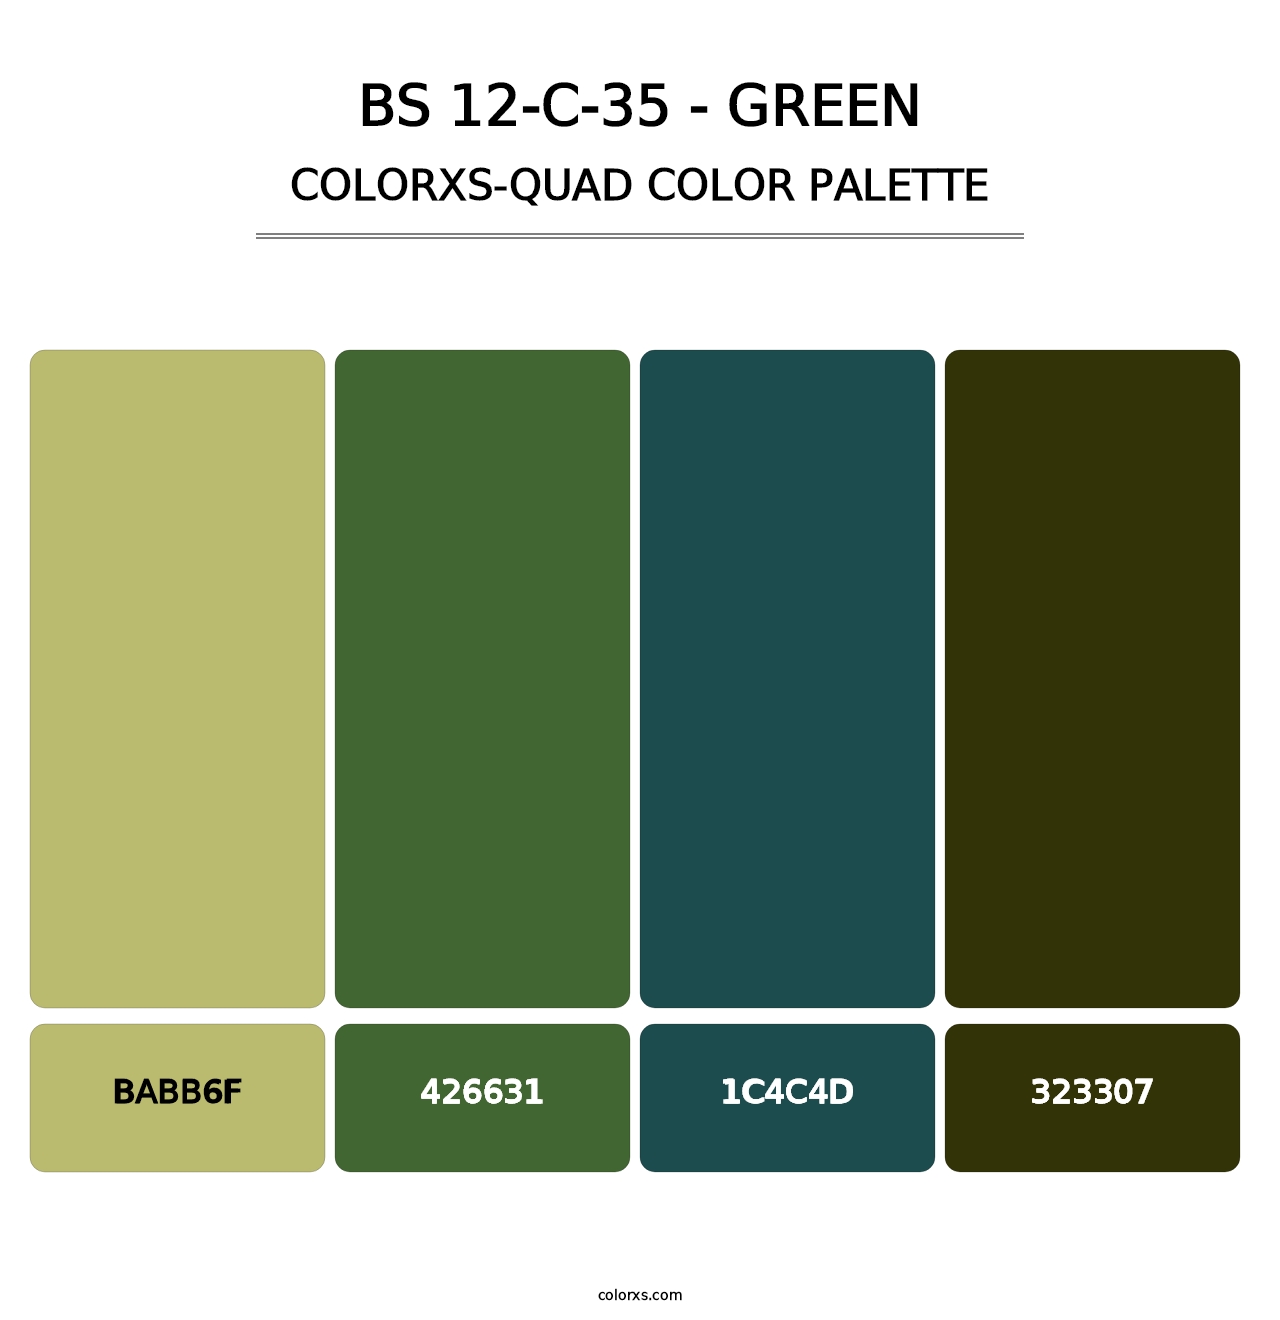 BS 12-C-35 - Green - Colorxs Quad Palette